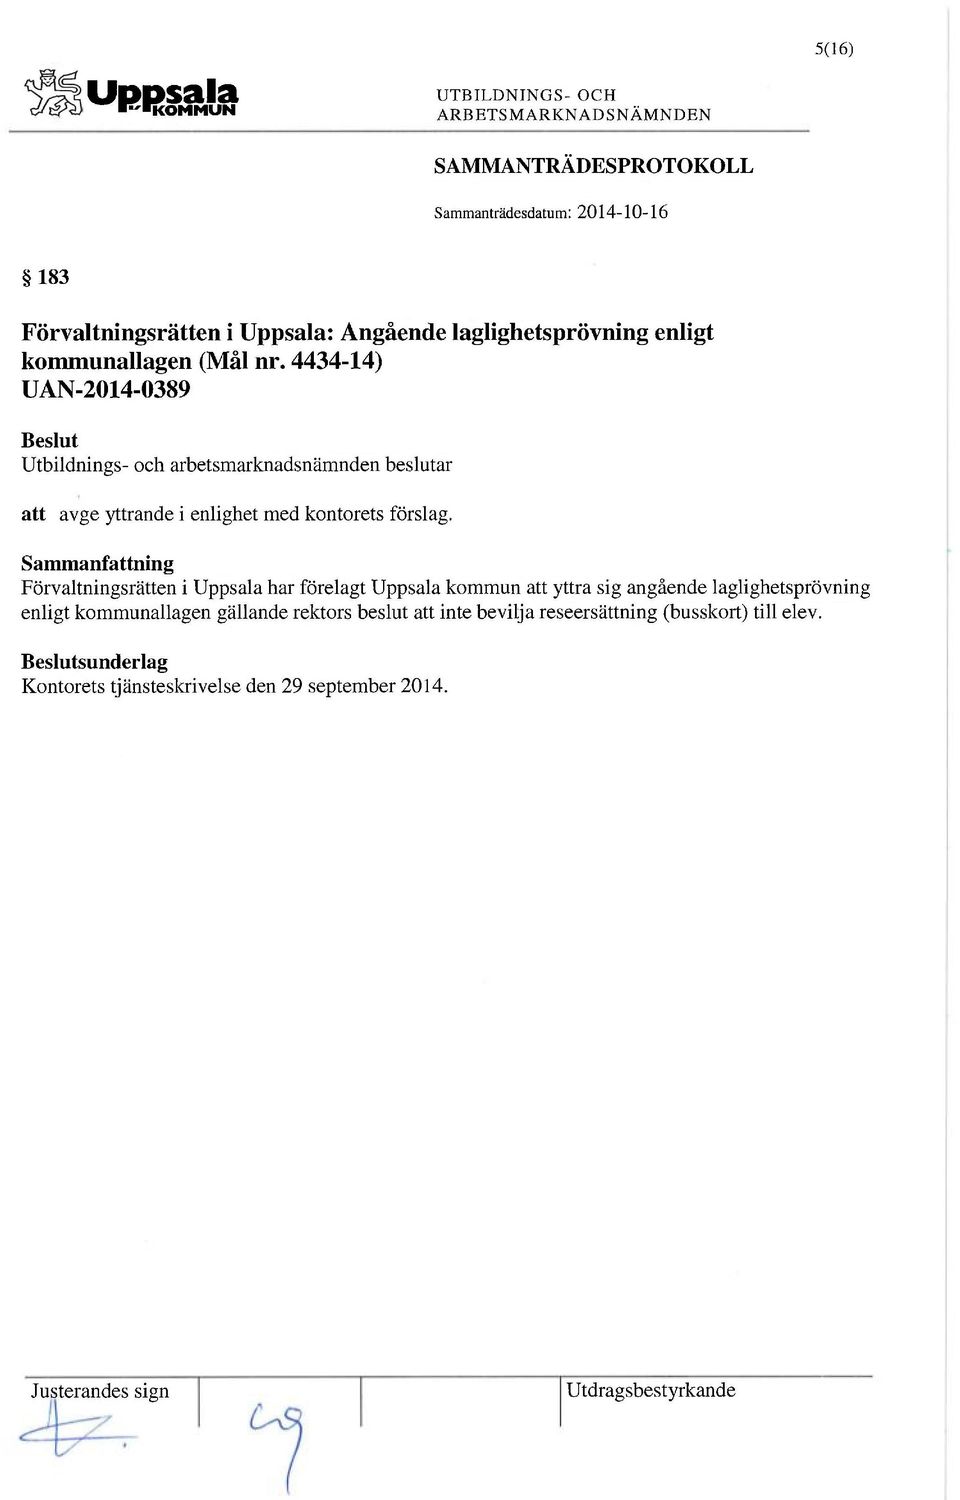 Förvaltningsrätten i Uppsala har förelagt Uppsala kommun att yttra sig angående laglighetsprövning enligt